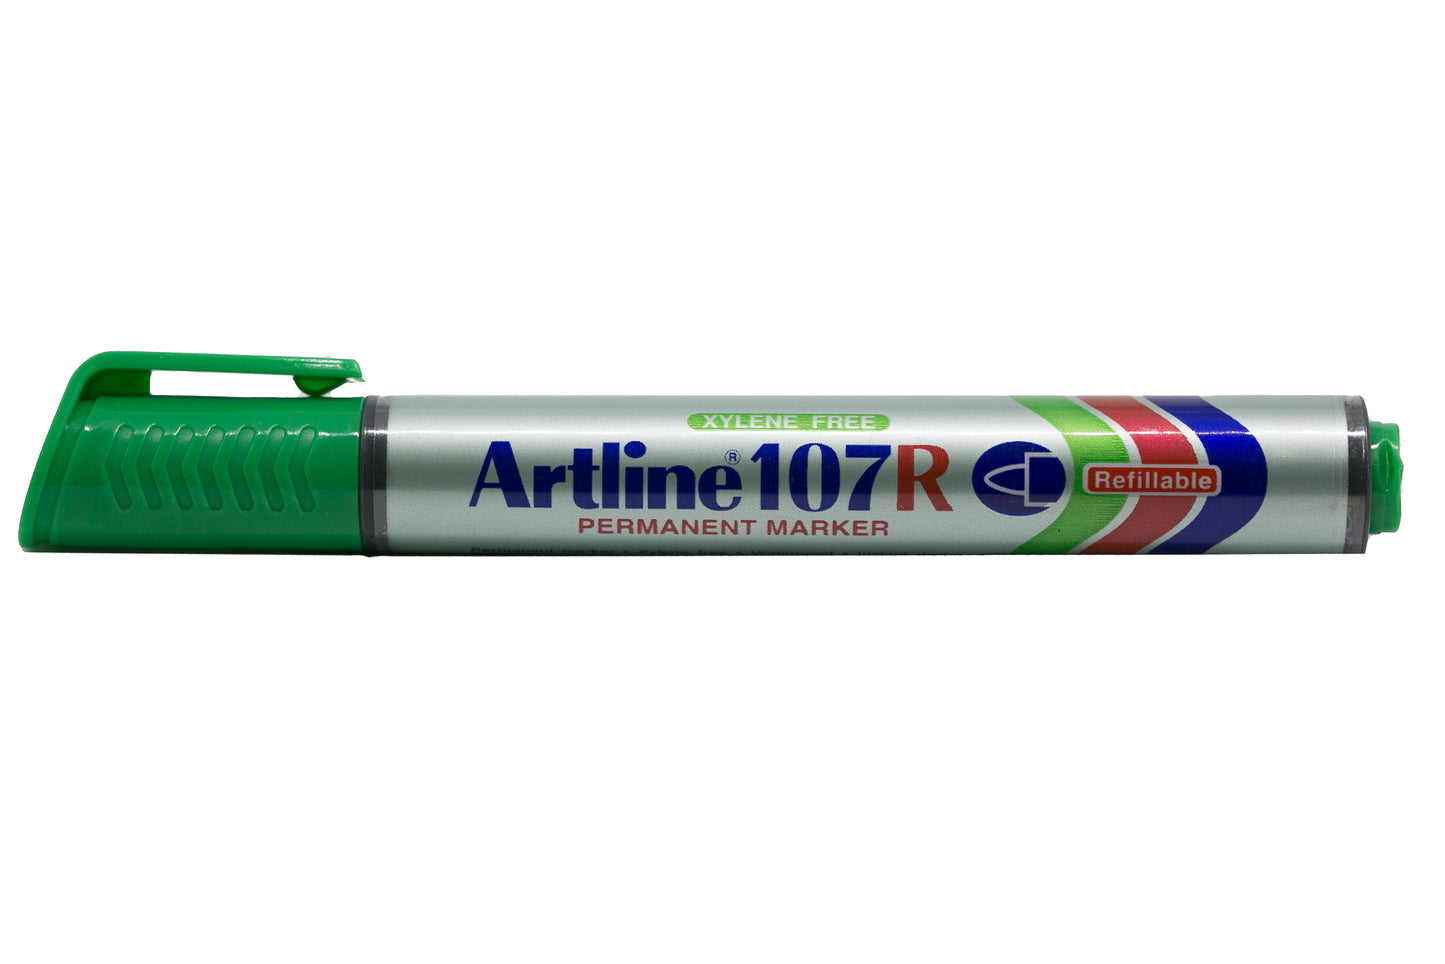 Artline Permanent Marker Refillable EK-107R 1.5mm Green